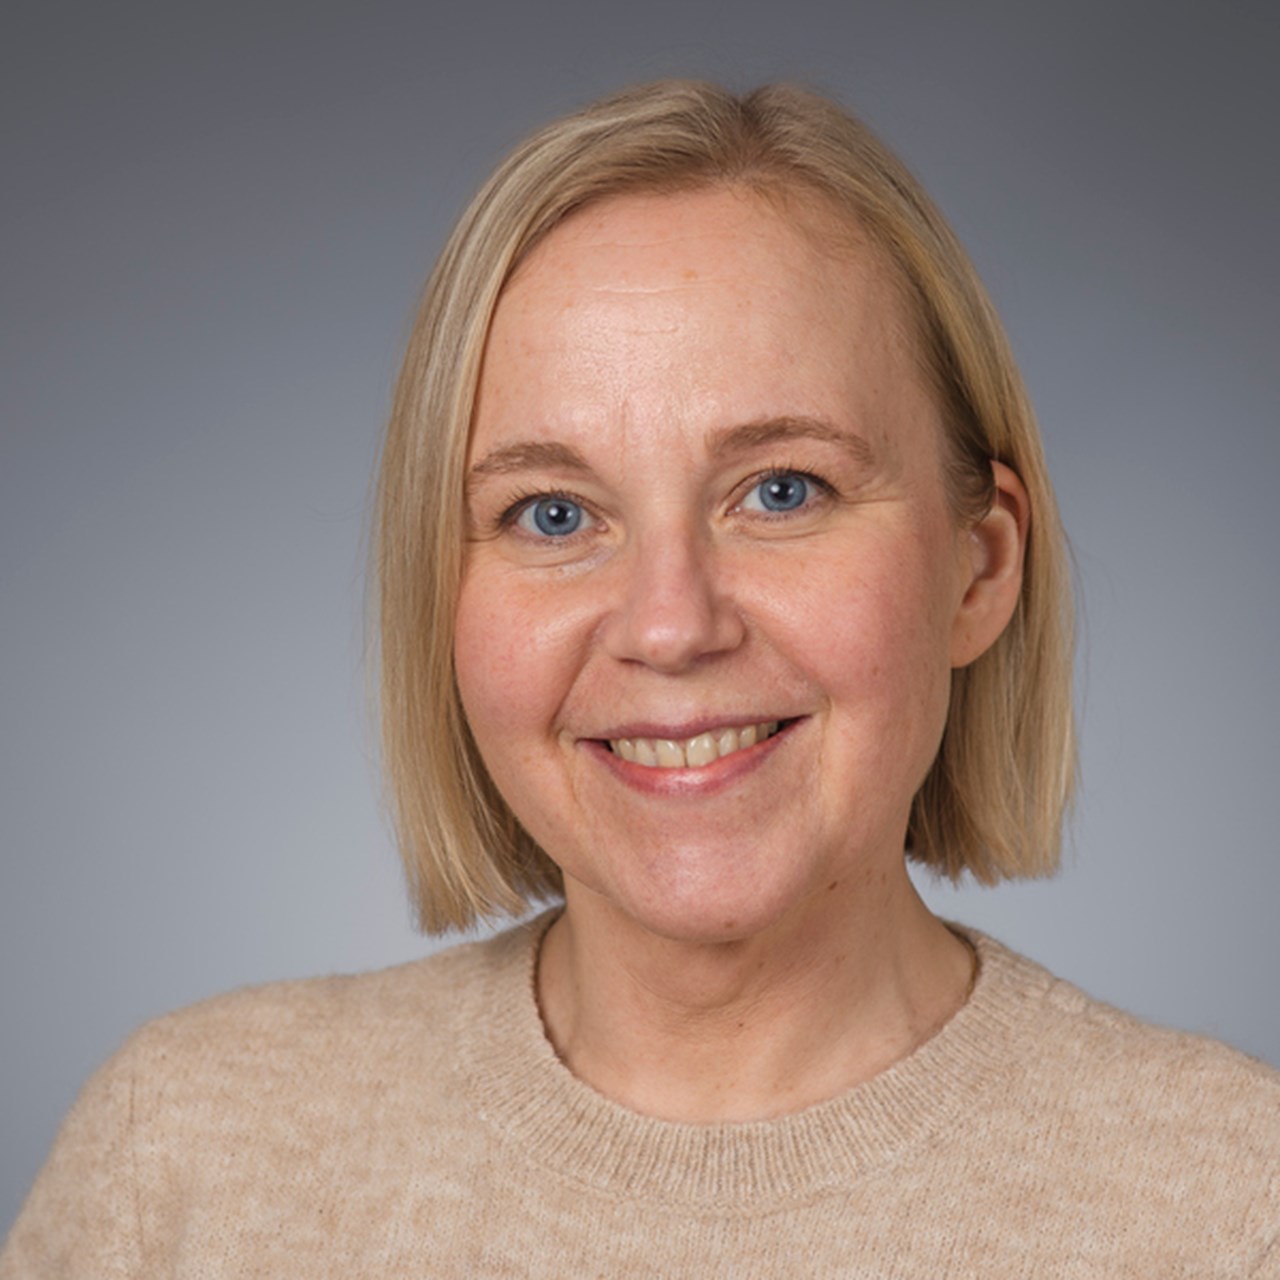 Marlene SandlundUniversitetslektor vid Institutionen för samhällsmedicin och rehabiliteringEnhet: Fysioterapi